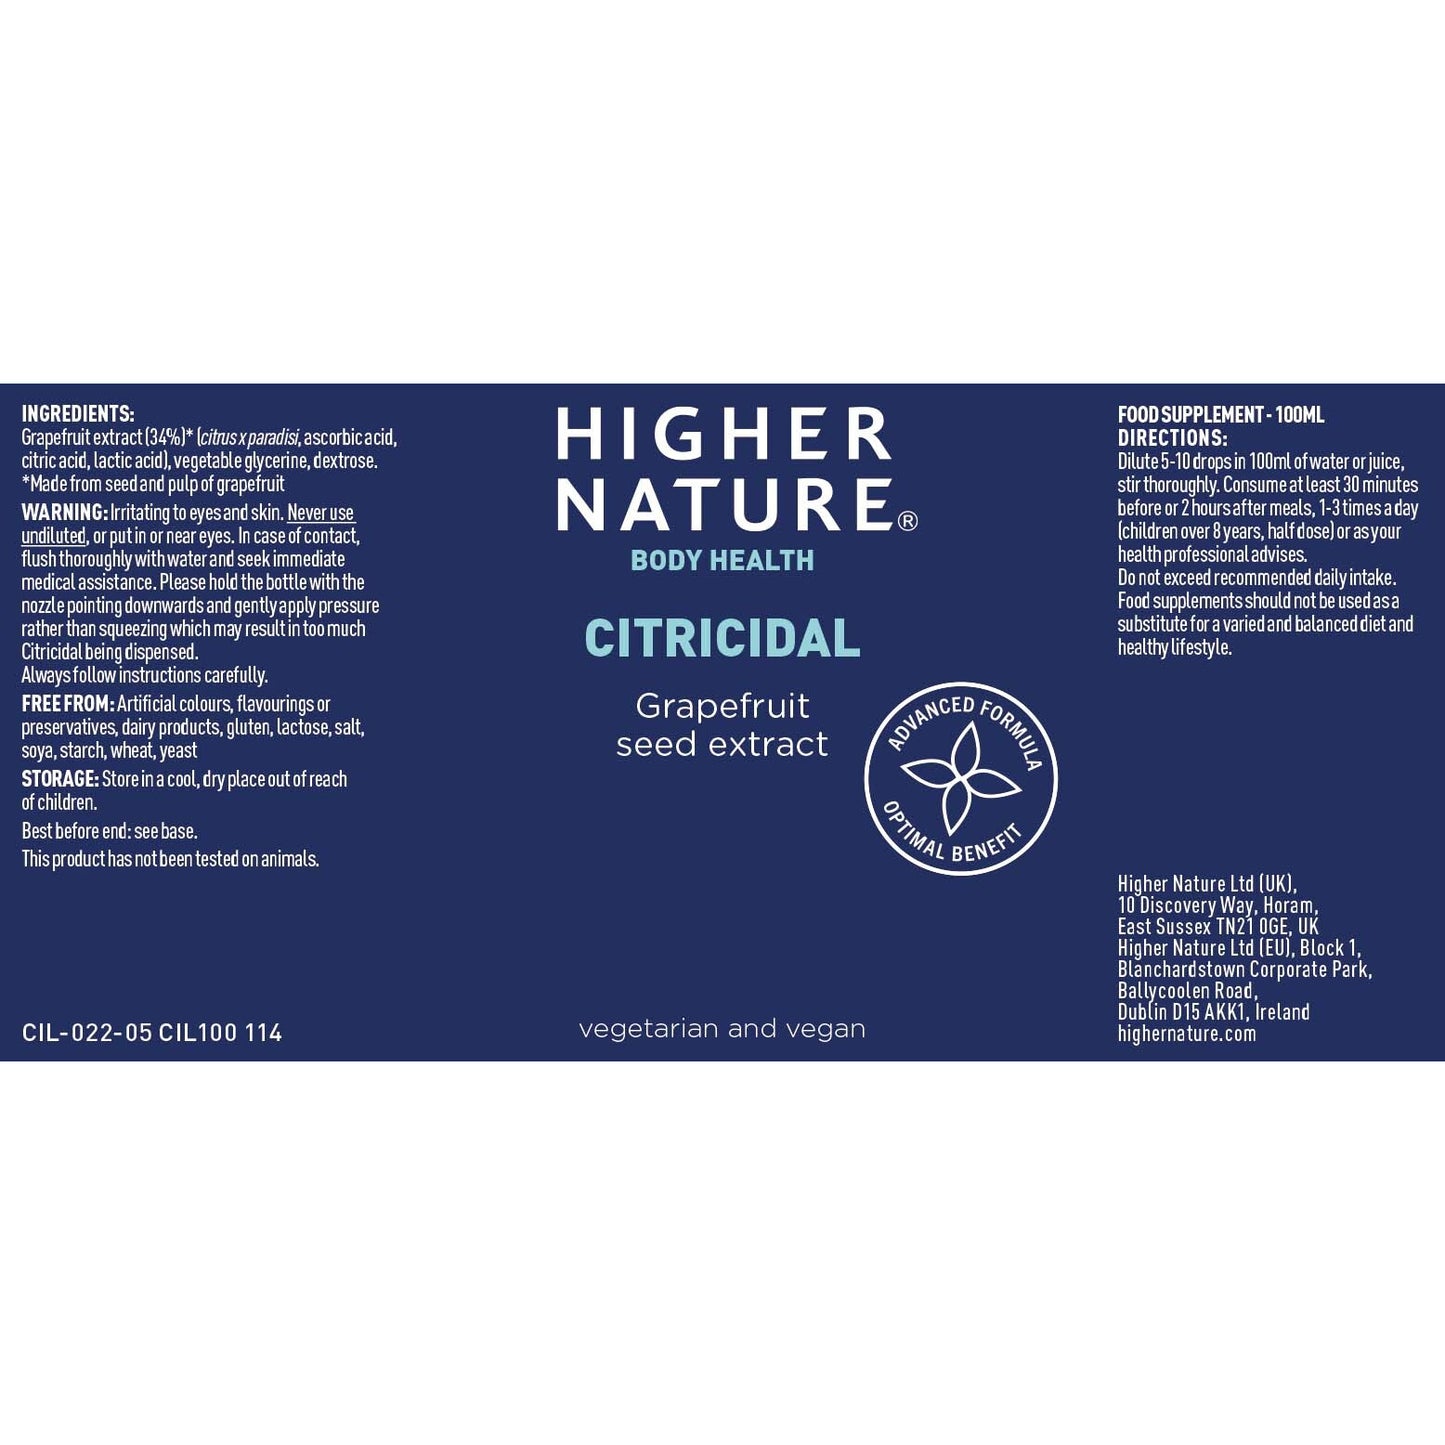 Higher Nature Citricidal Liquid